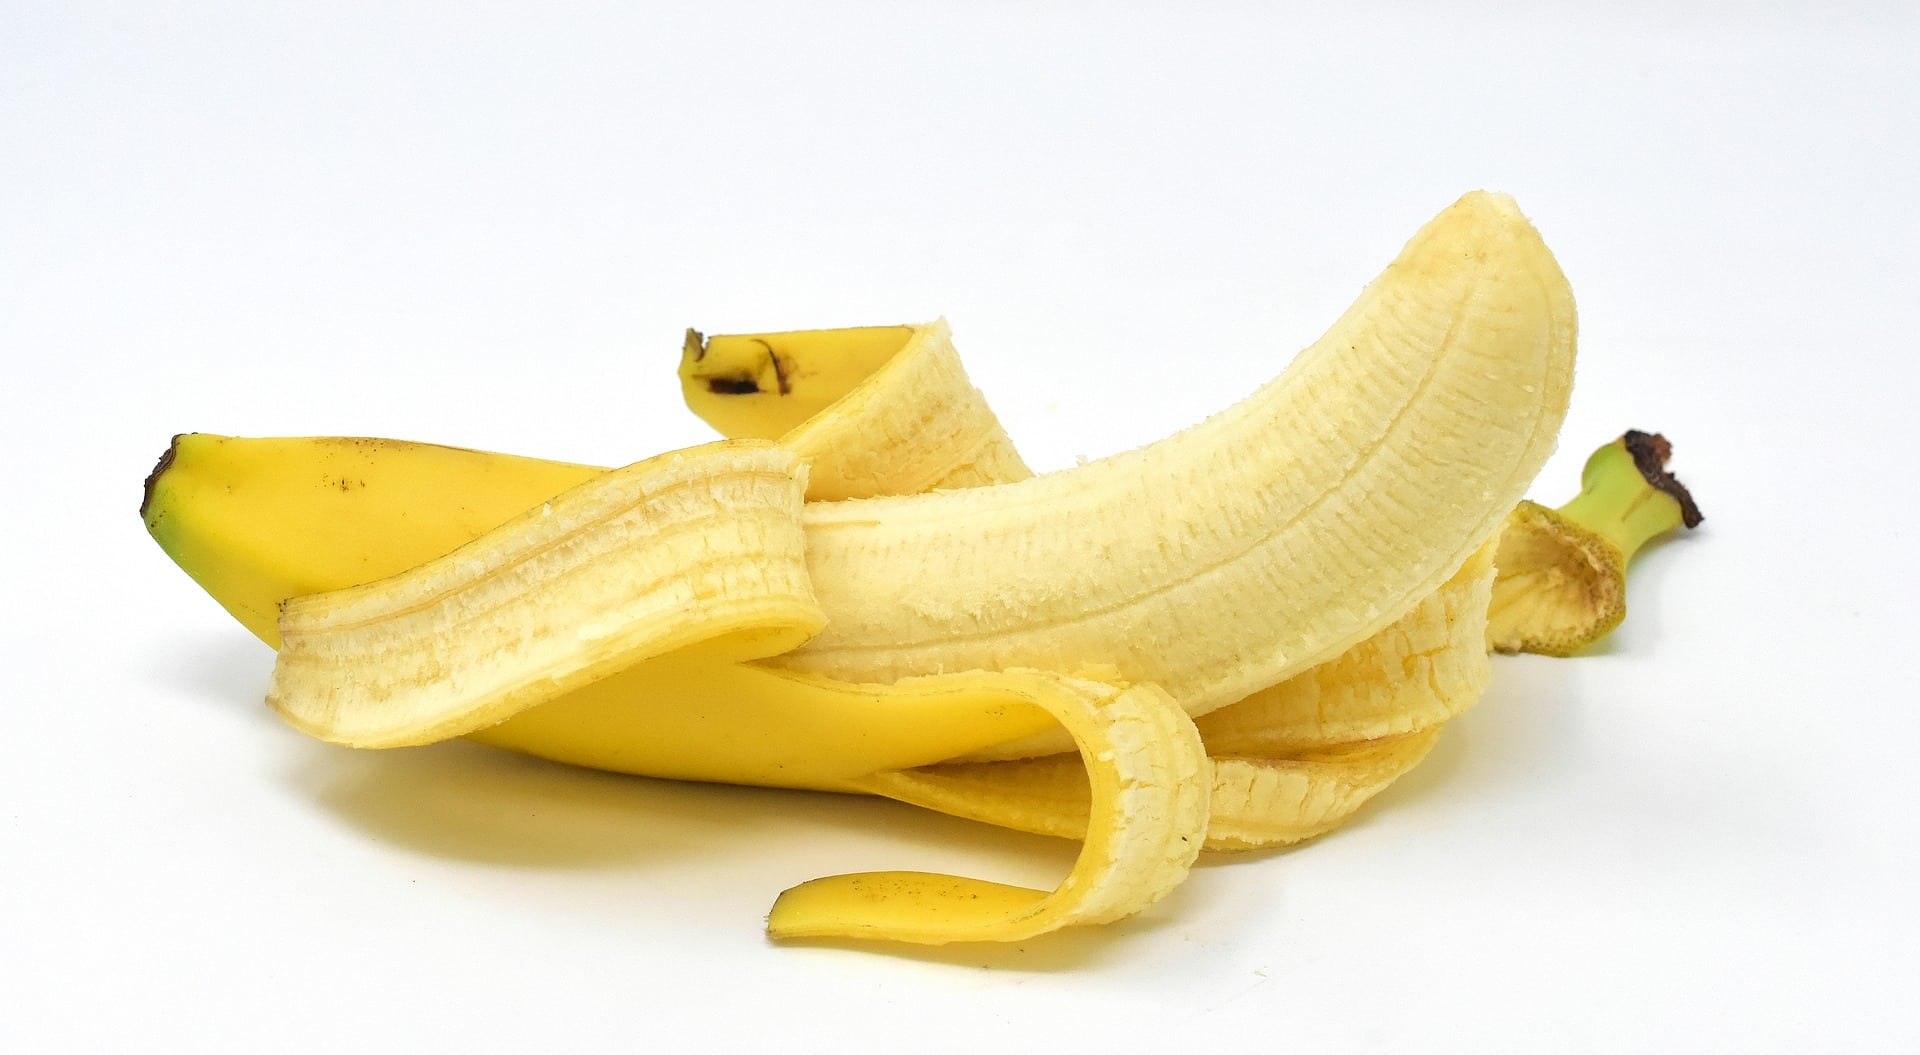 Pokud kupujete banány, před konzumací raději věnujte pozornost jejich vzhledu